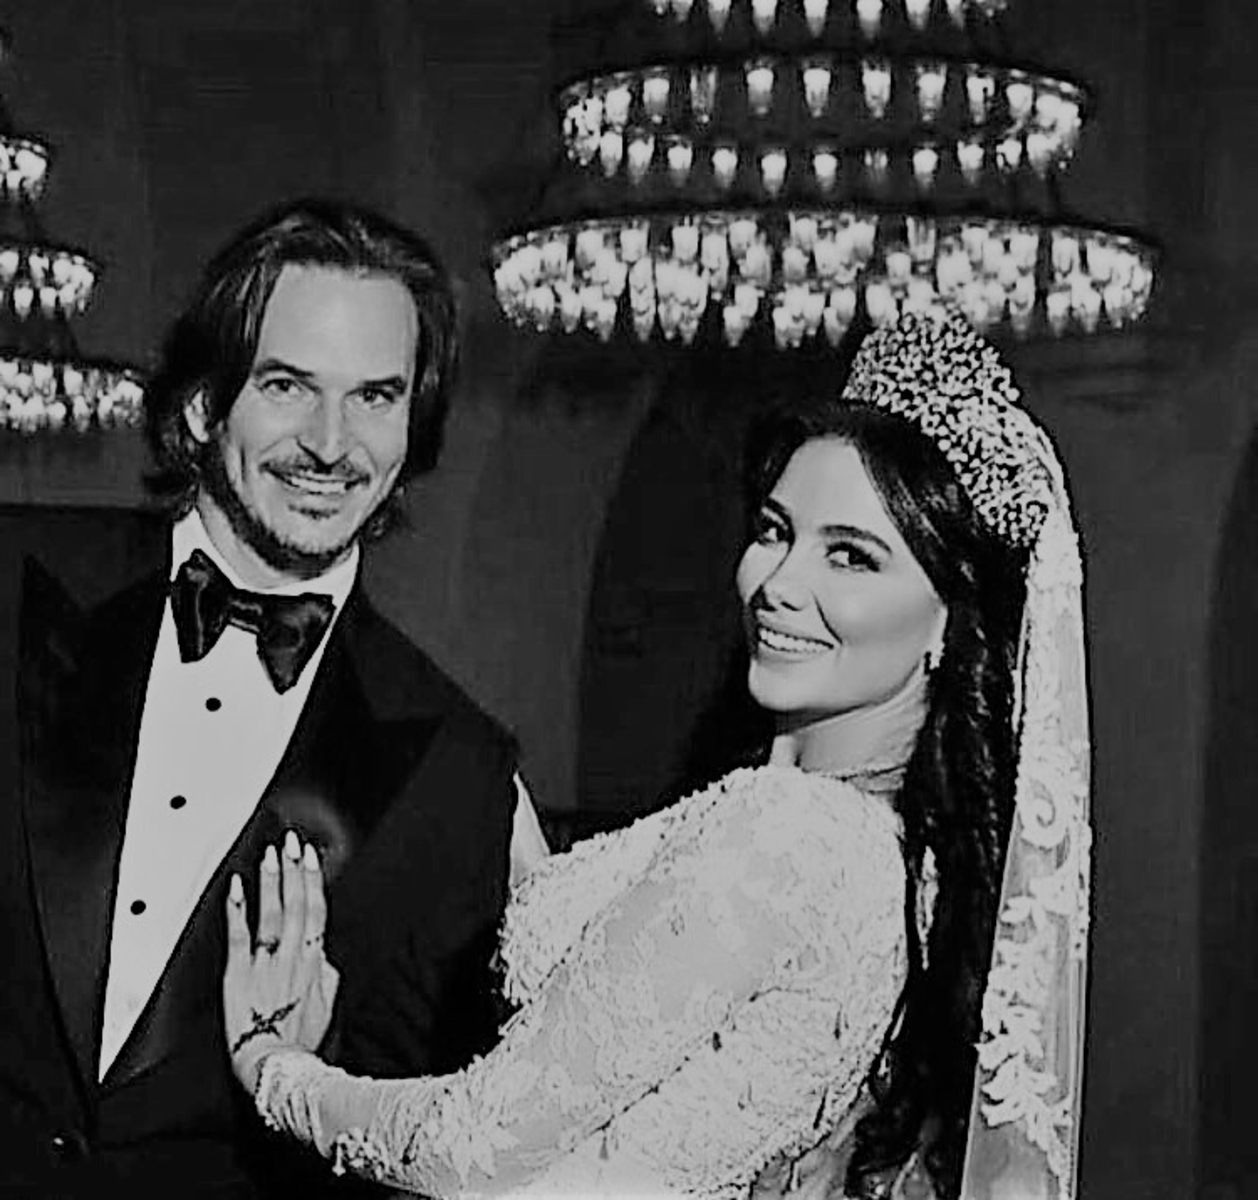 صورة شيماء هلالي وزوجها تجتاح السوشيال ميديا